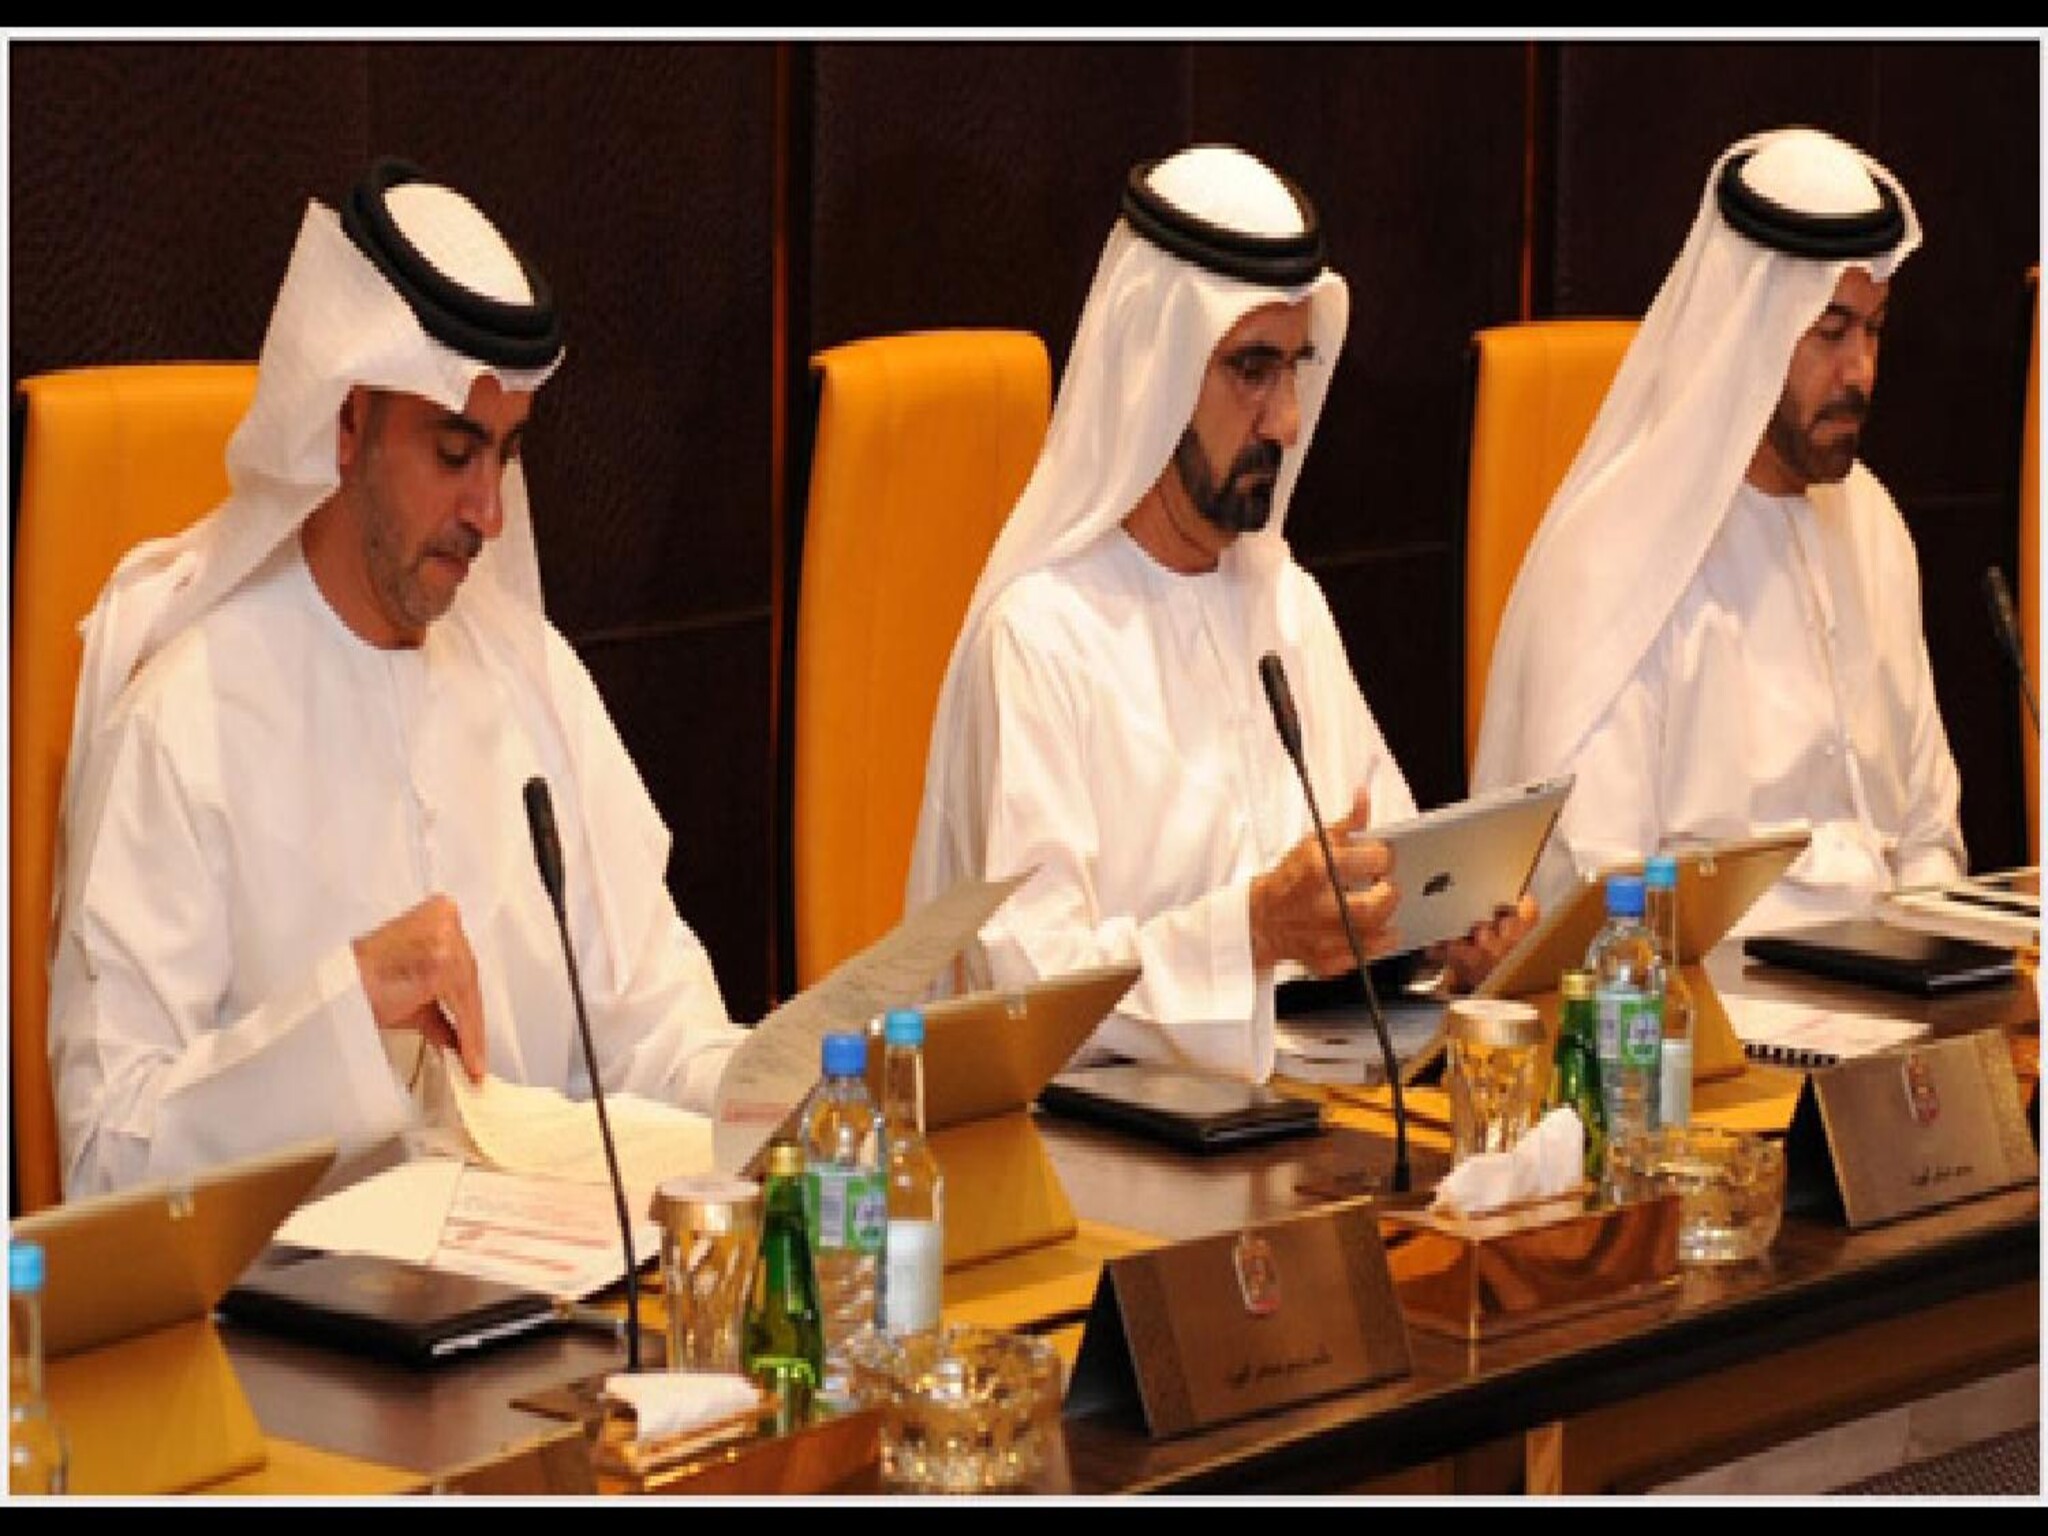 مجلس الوزراء يفعل نظام العمل عن بعد للموظفين في الإمارات مؤقتا